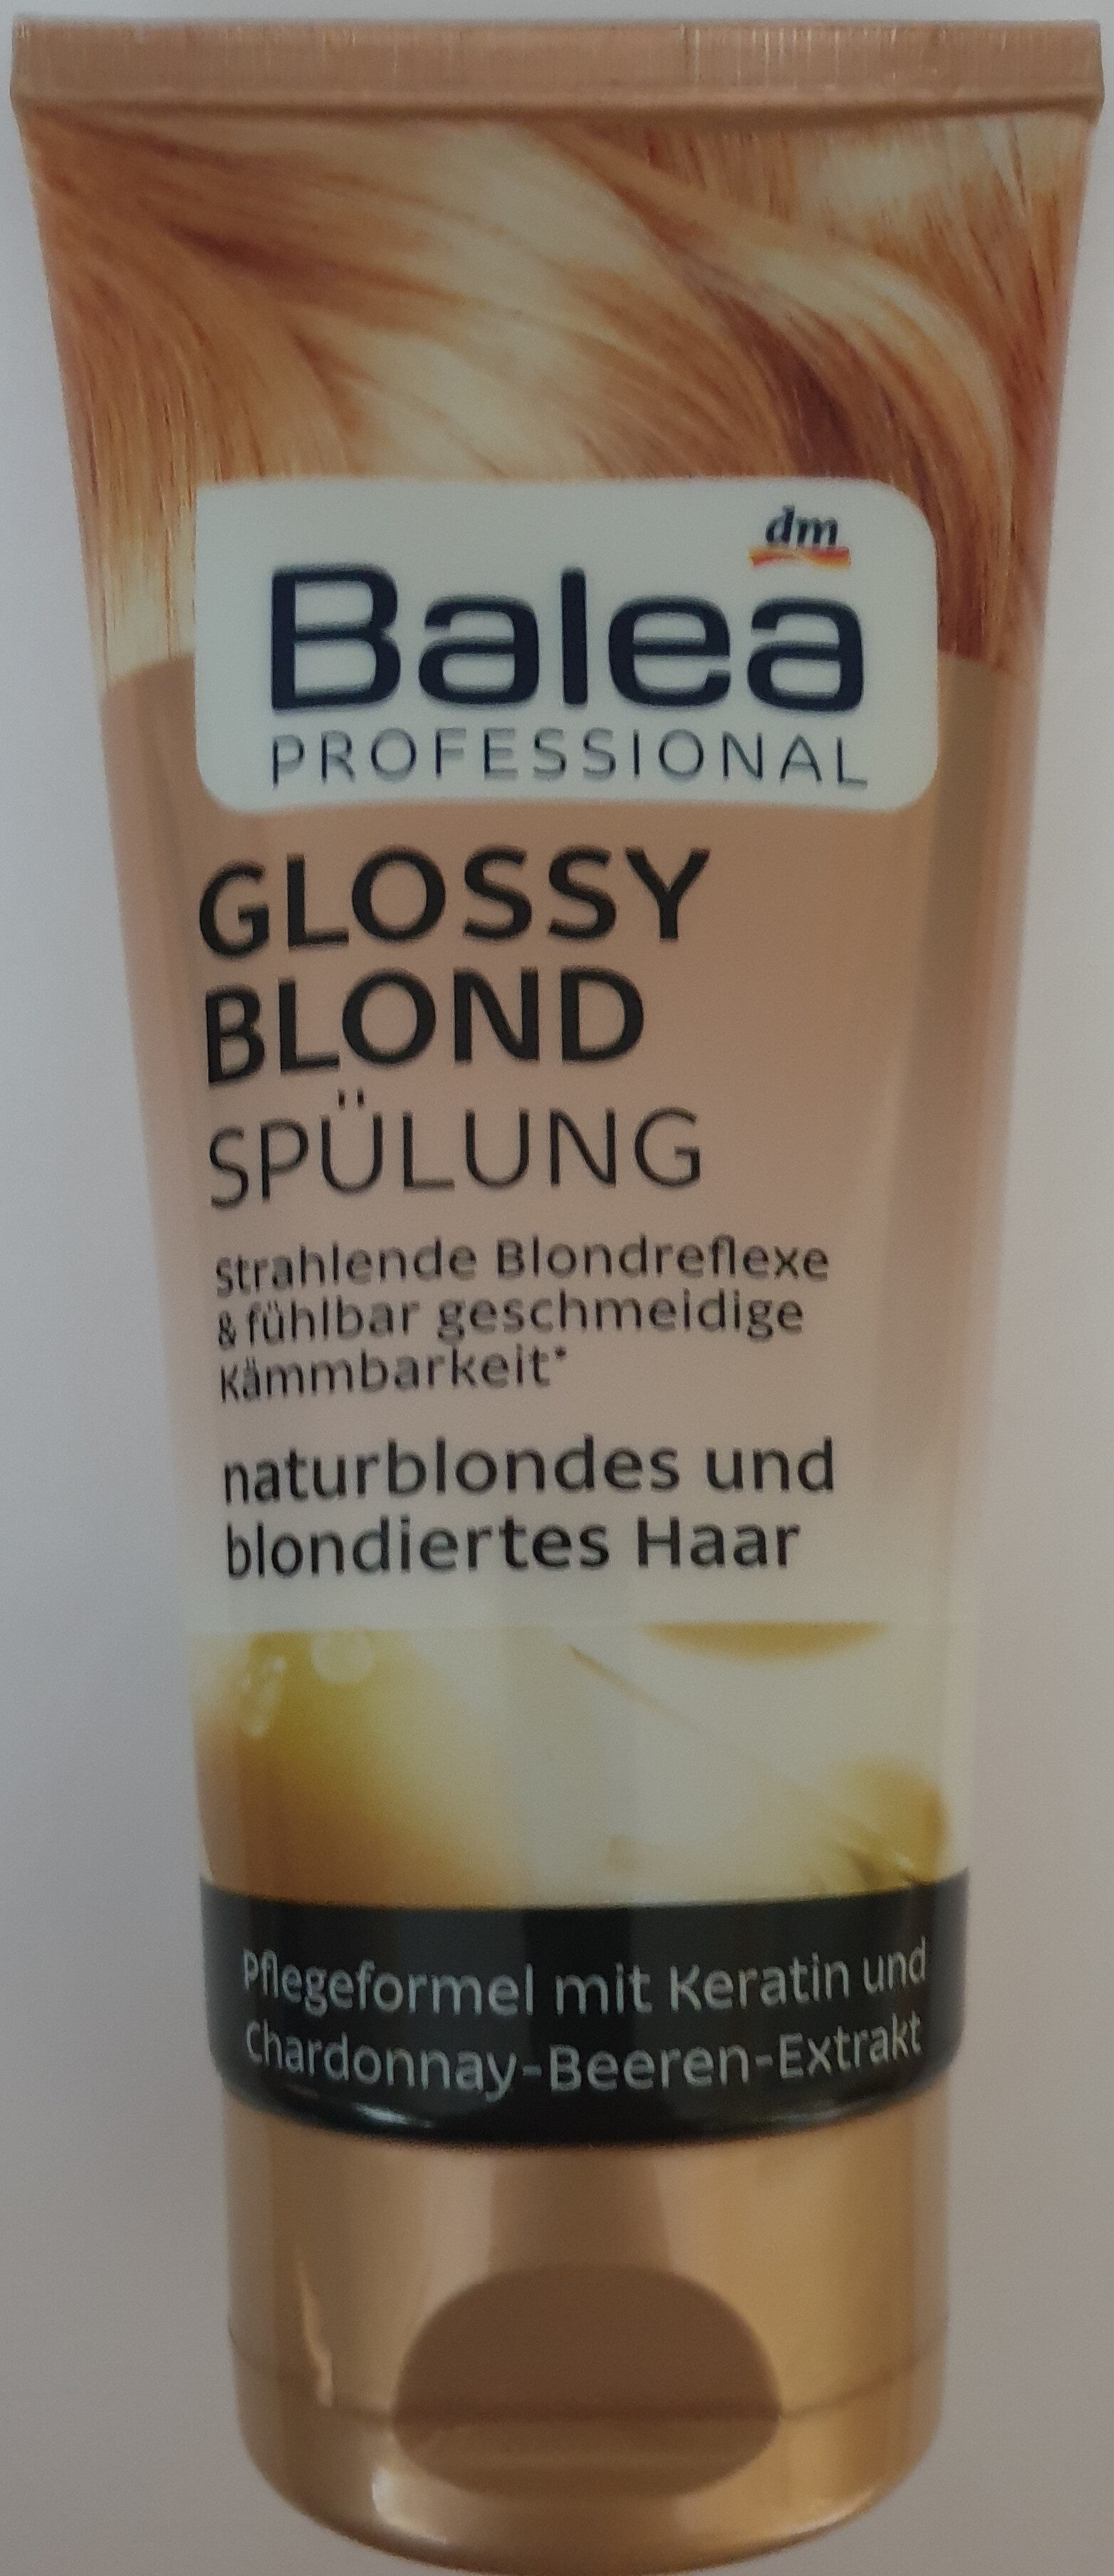 Glossy blond Spülung, naturblondes und blondiertes Haar - Produit - de